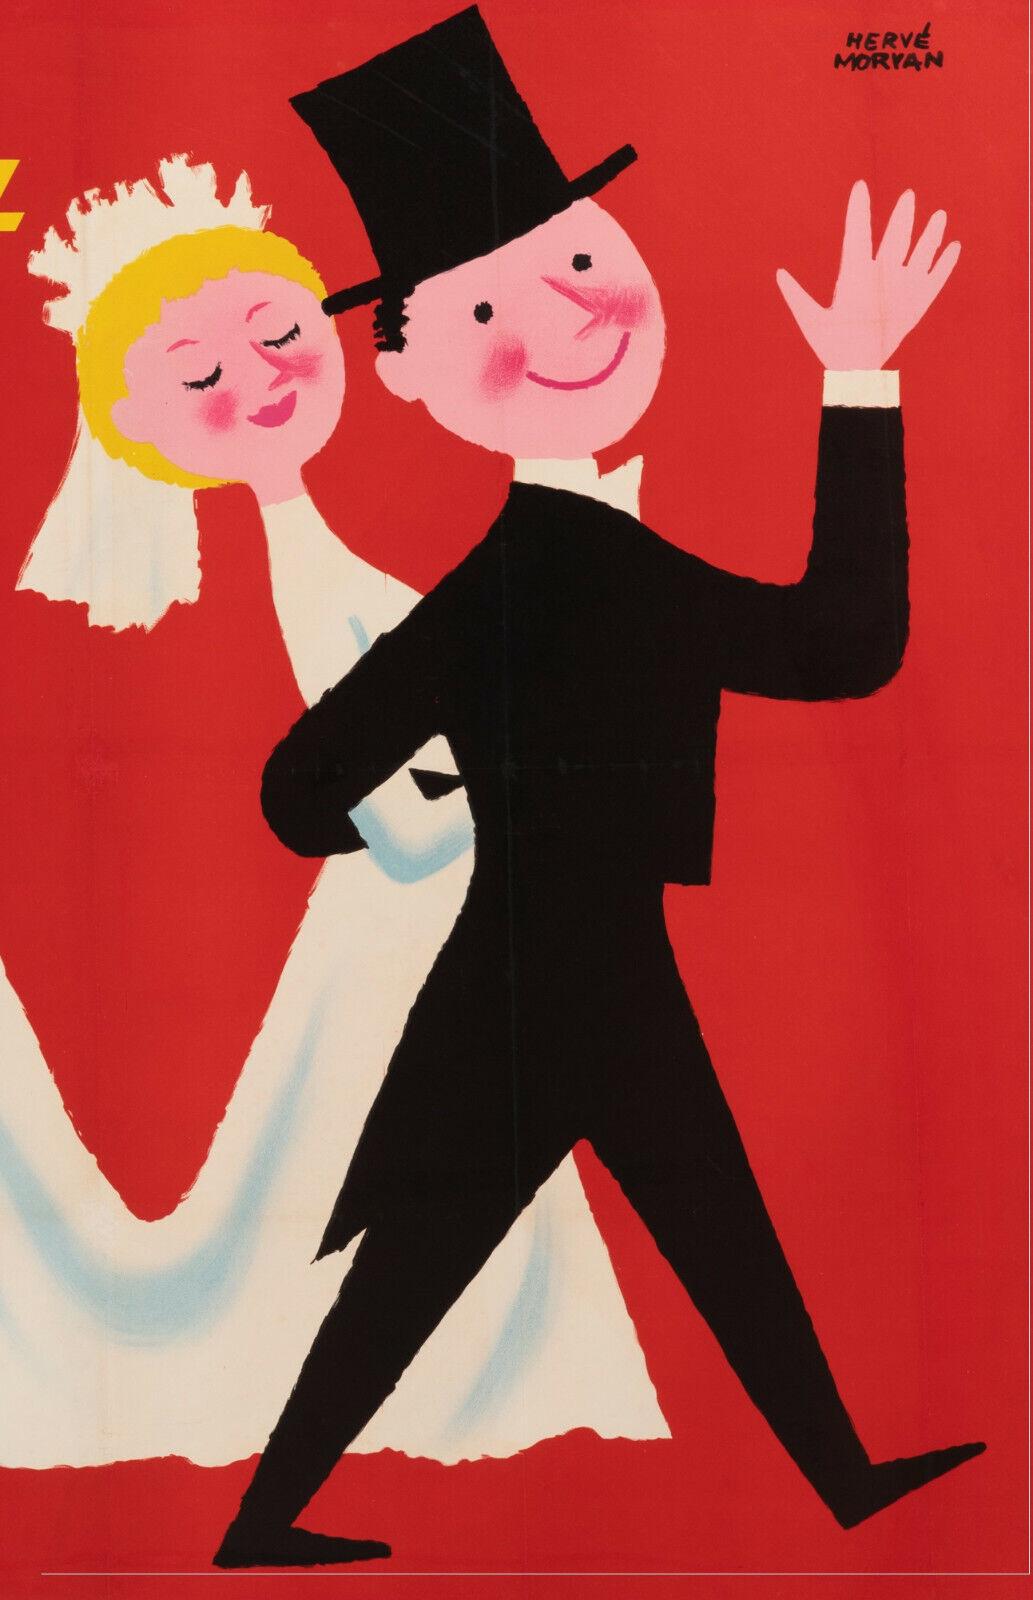 Original Vintage Poster-Herve Morvan-Brandt-Home Appliance-Marriage, c.1955

Affiche publicitaire pour la machine à laver de la marque Brandt.
Un couple de jeunes mariés dont la robe de mariée sort tout droit de la machine à laver est sur le